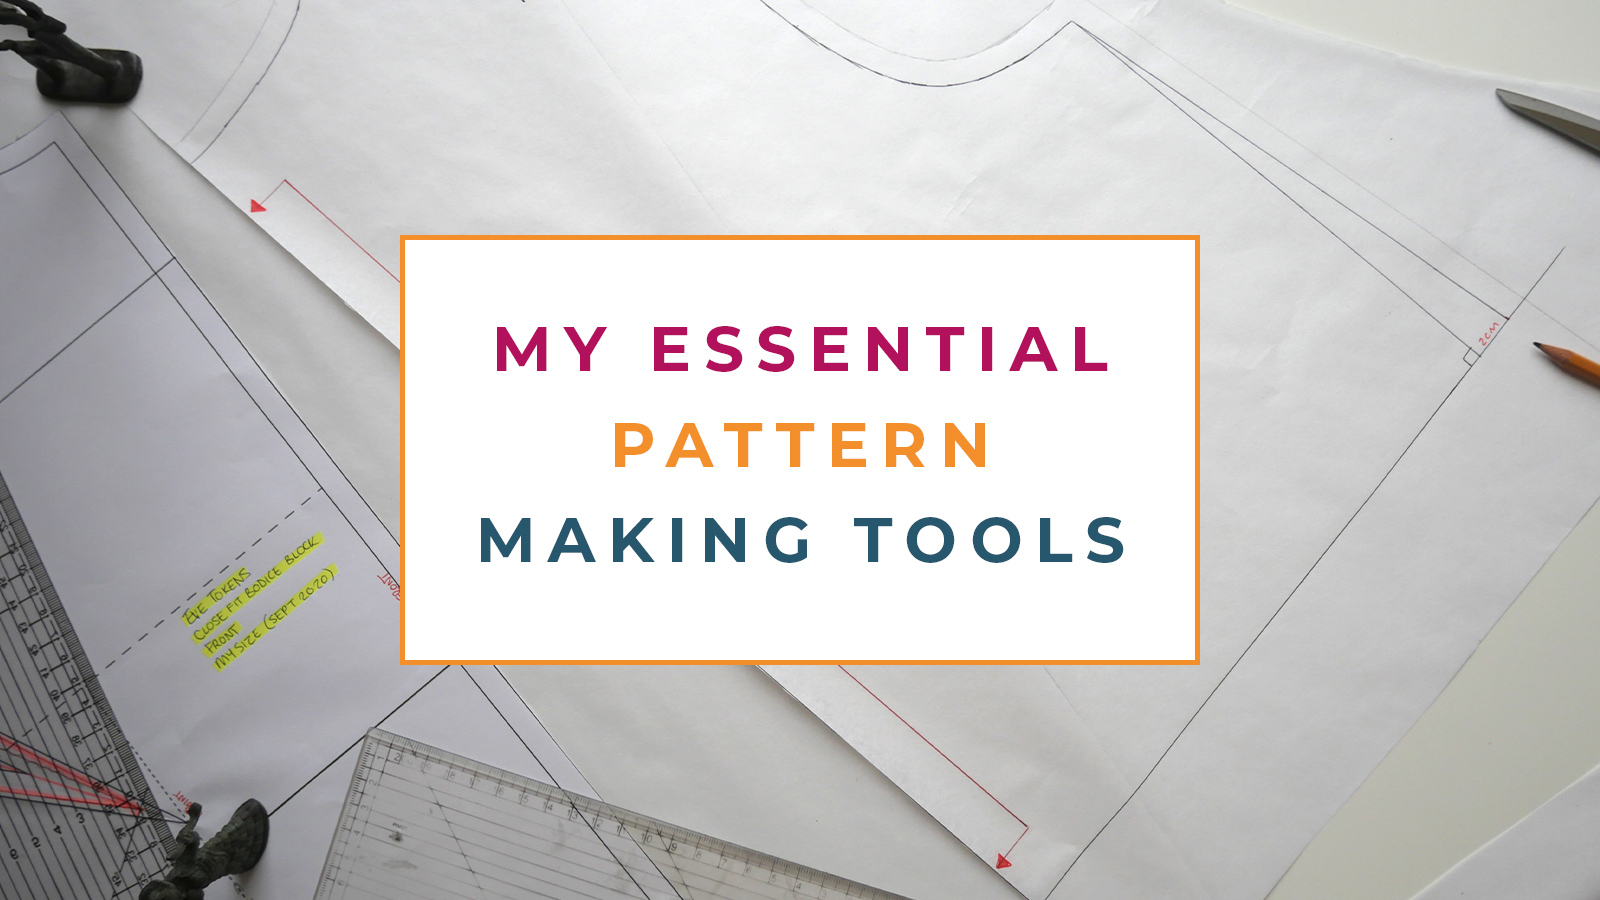 Patternmaking Basics 3-Class Set